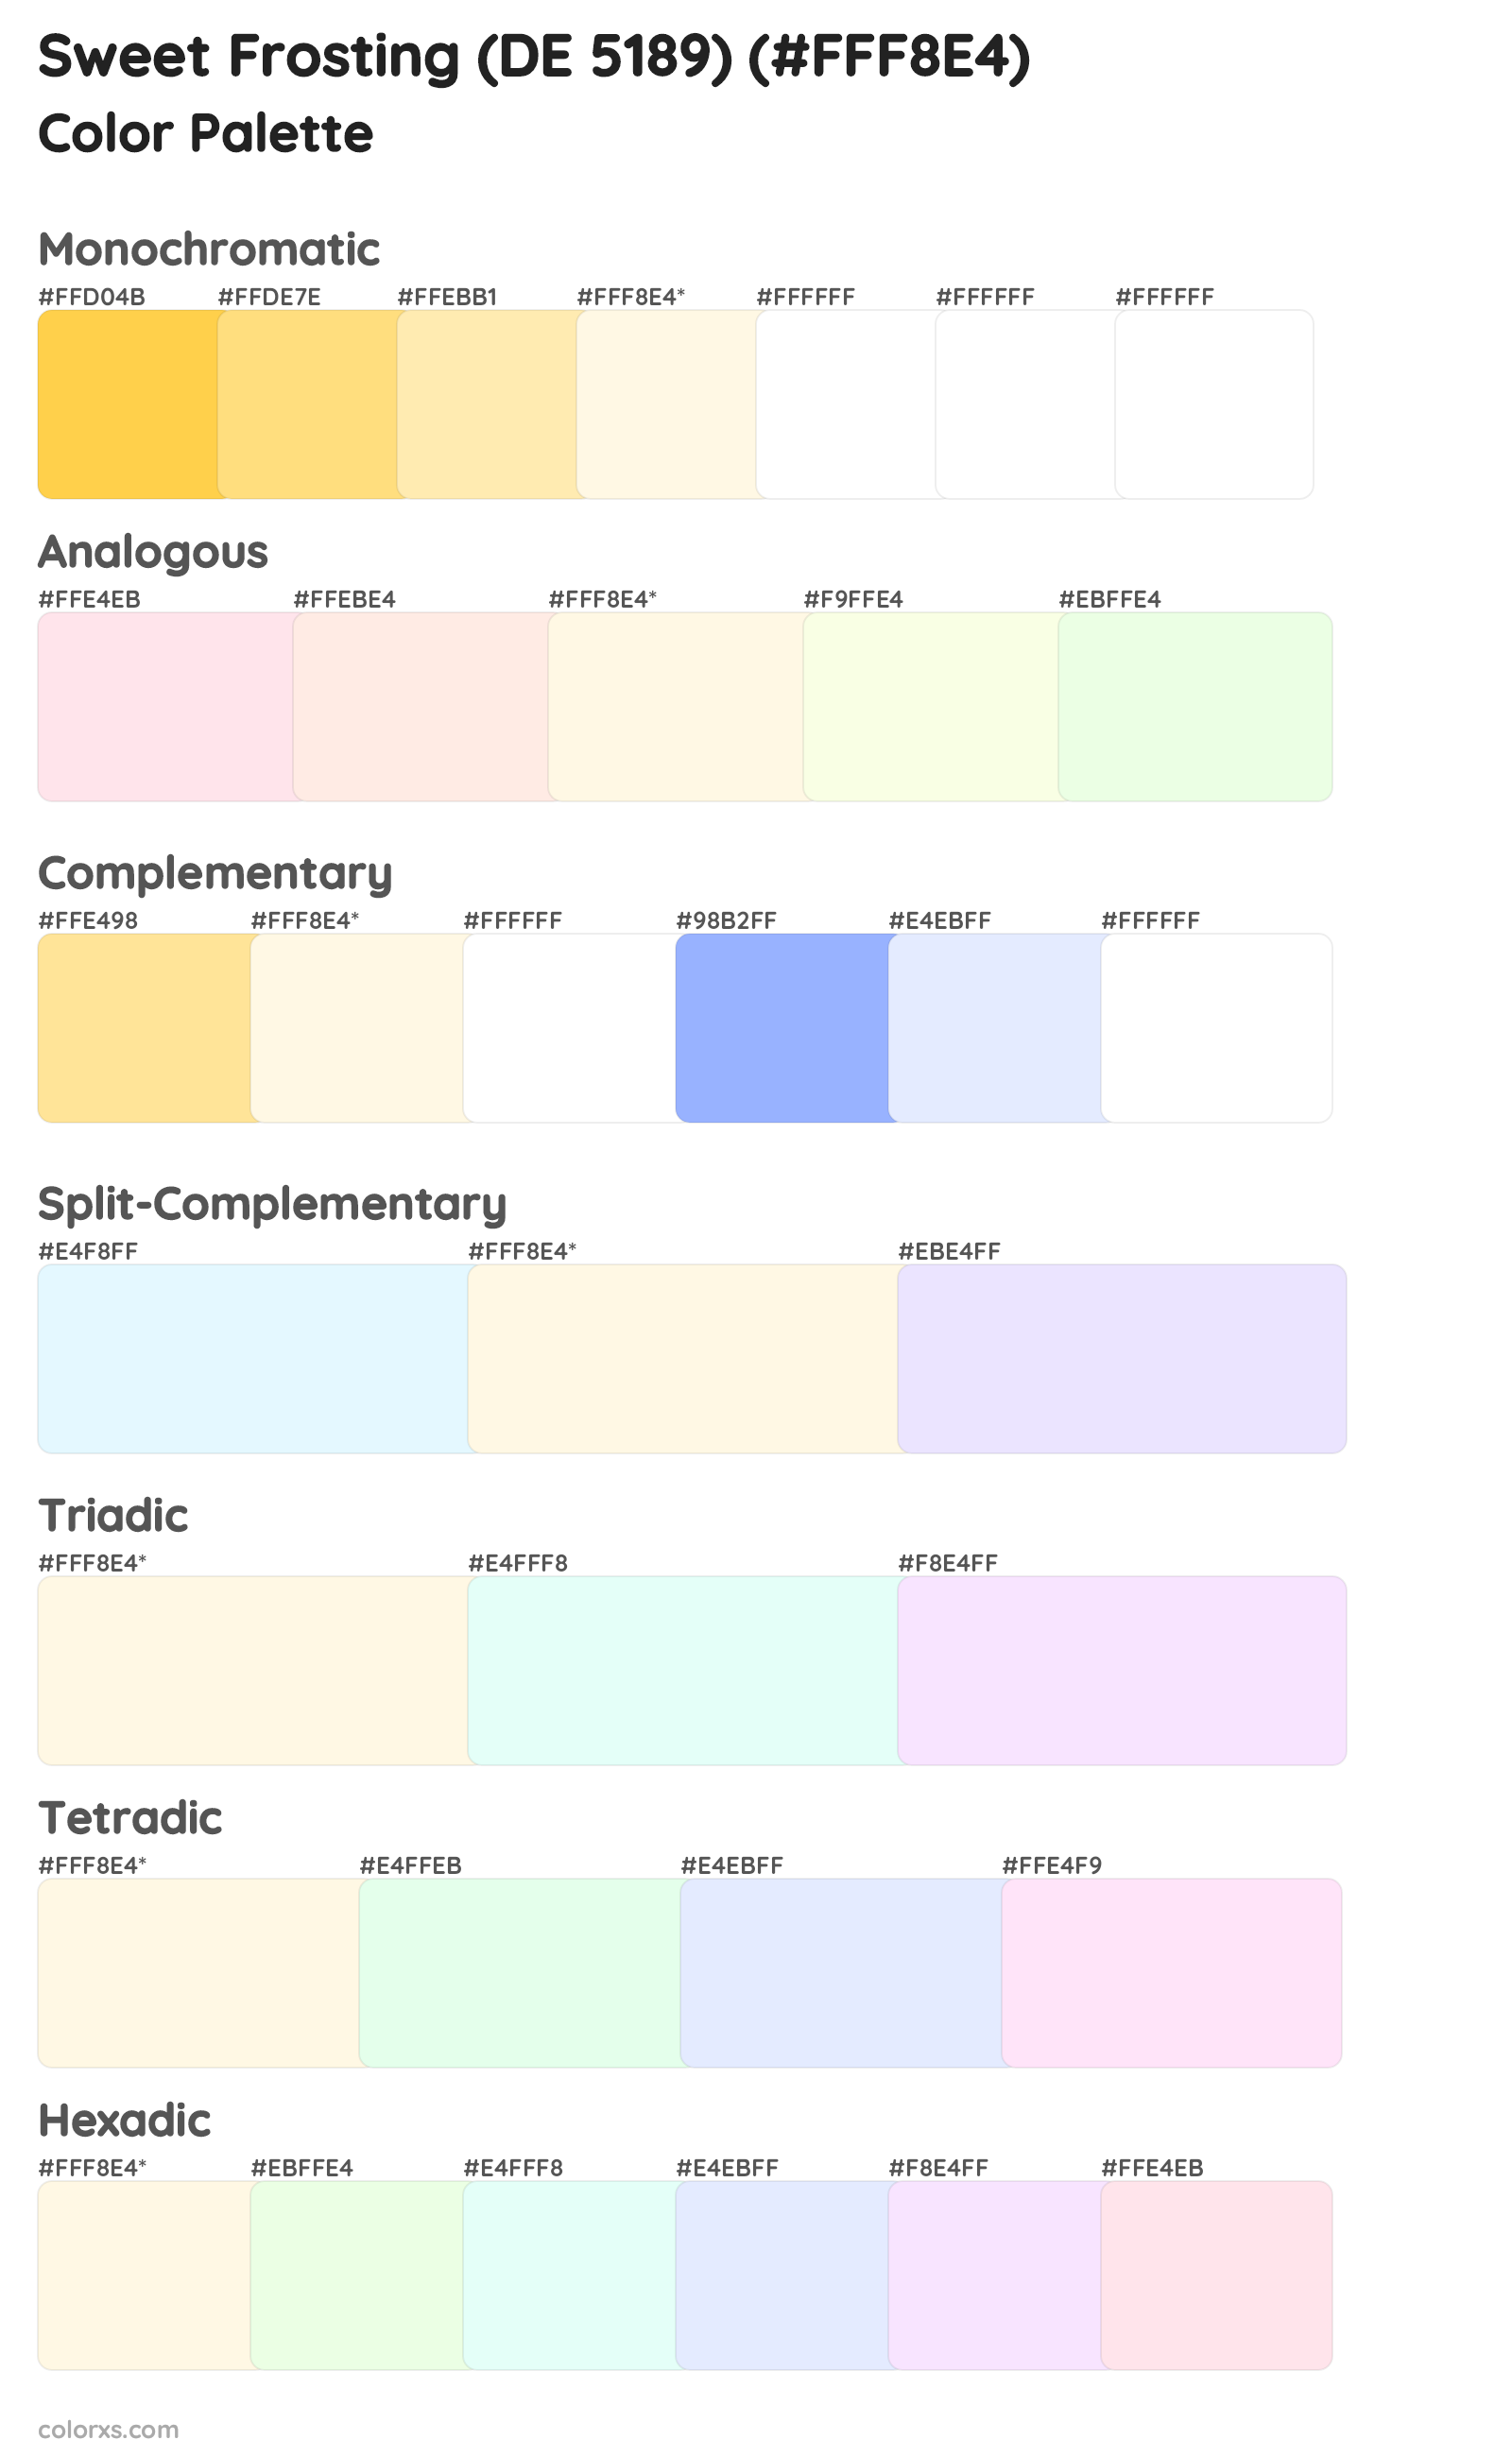 Sweet Frosting (DE 5189) Color Scheme Palettes